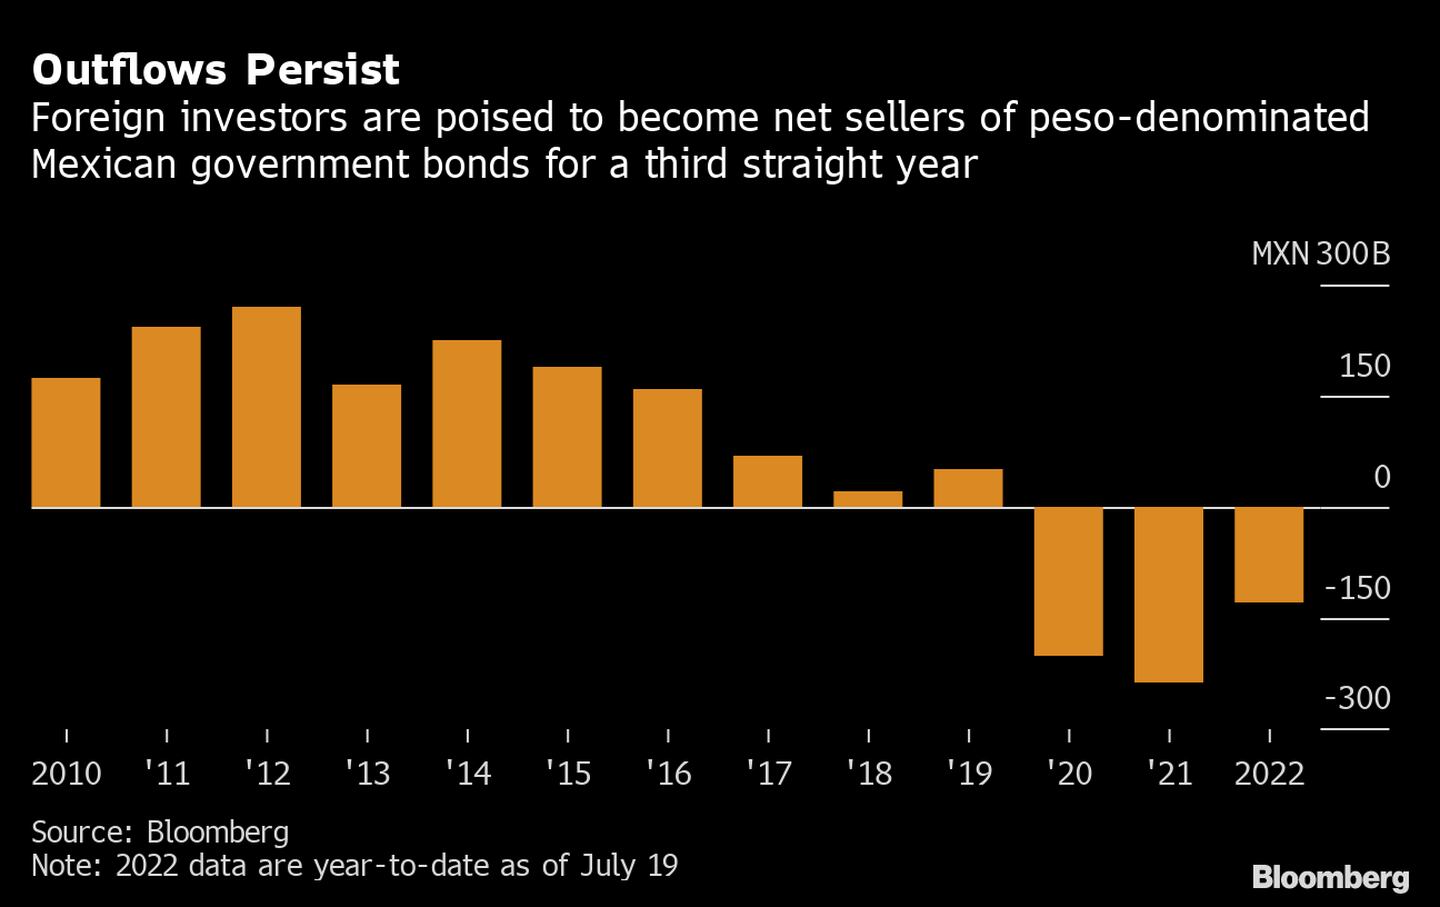 Los inversionistas extranjeros están preparados para convertirse en vendedores netos de bonos del Gobierno mexicano denominados en pesos por tercer año consecutivo. dfd